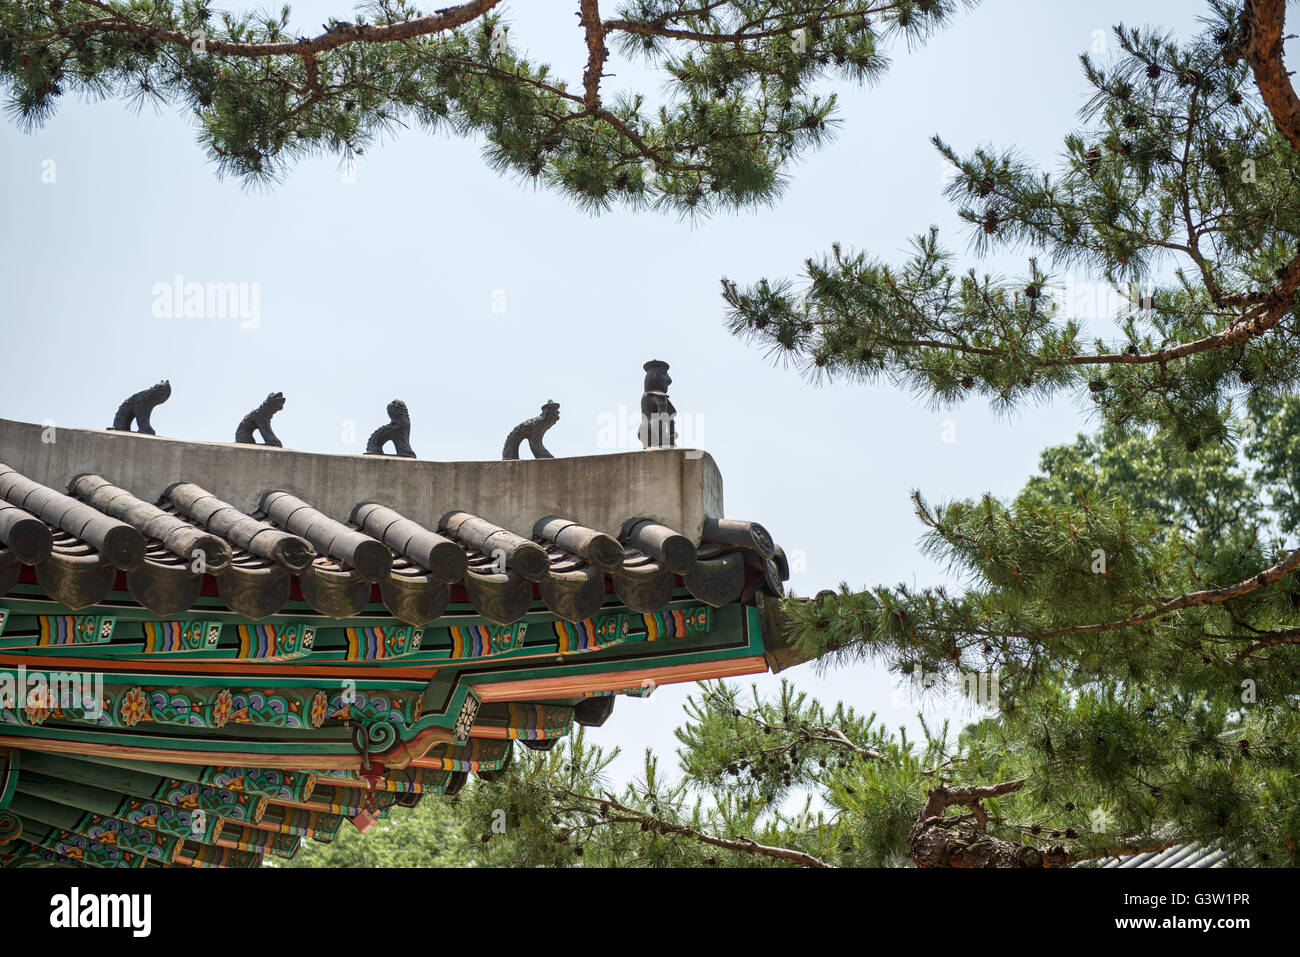 Traditionelle Korea Dach Dekoration. blauer Himmel und bunten Strukturen Stockfoto